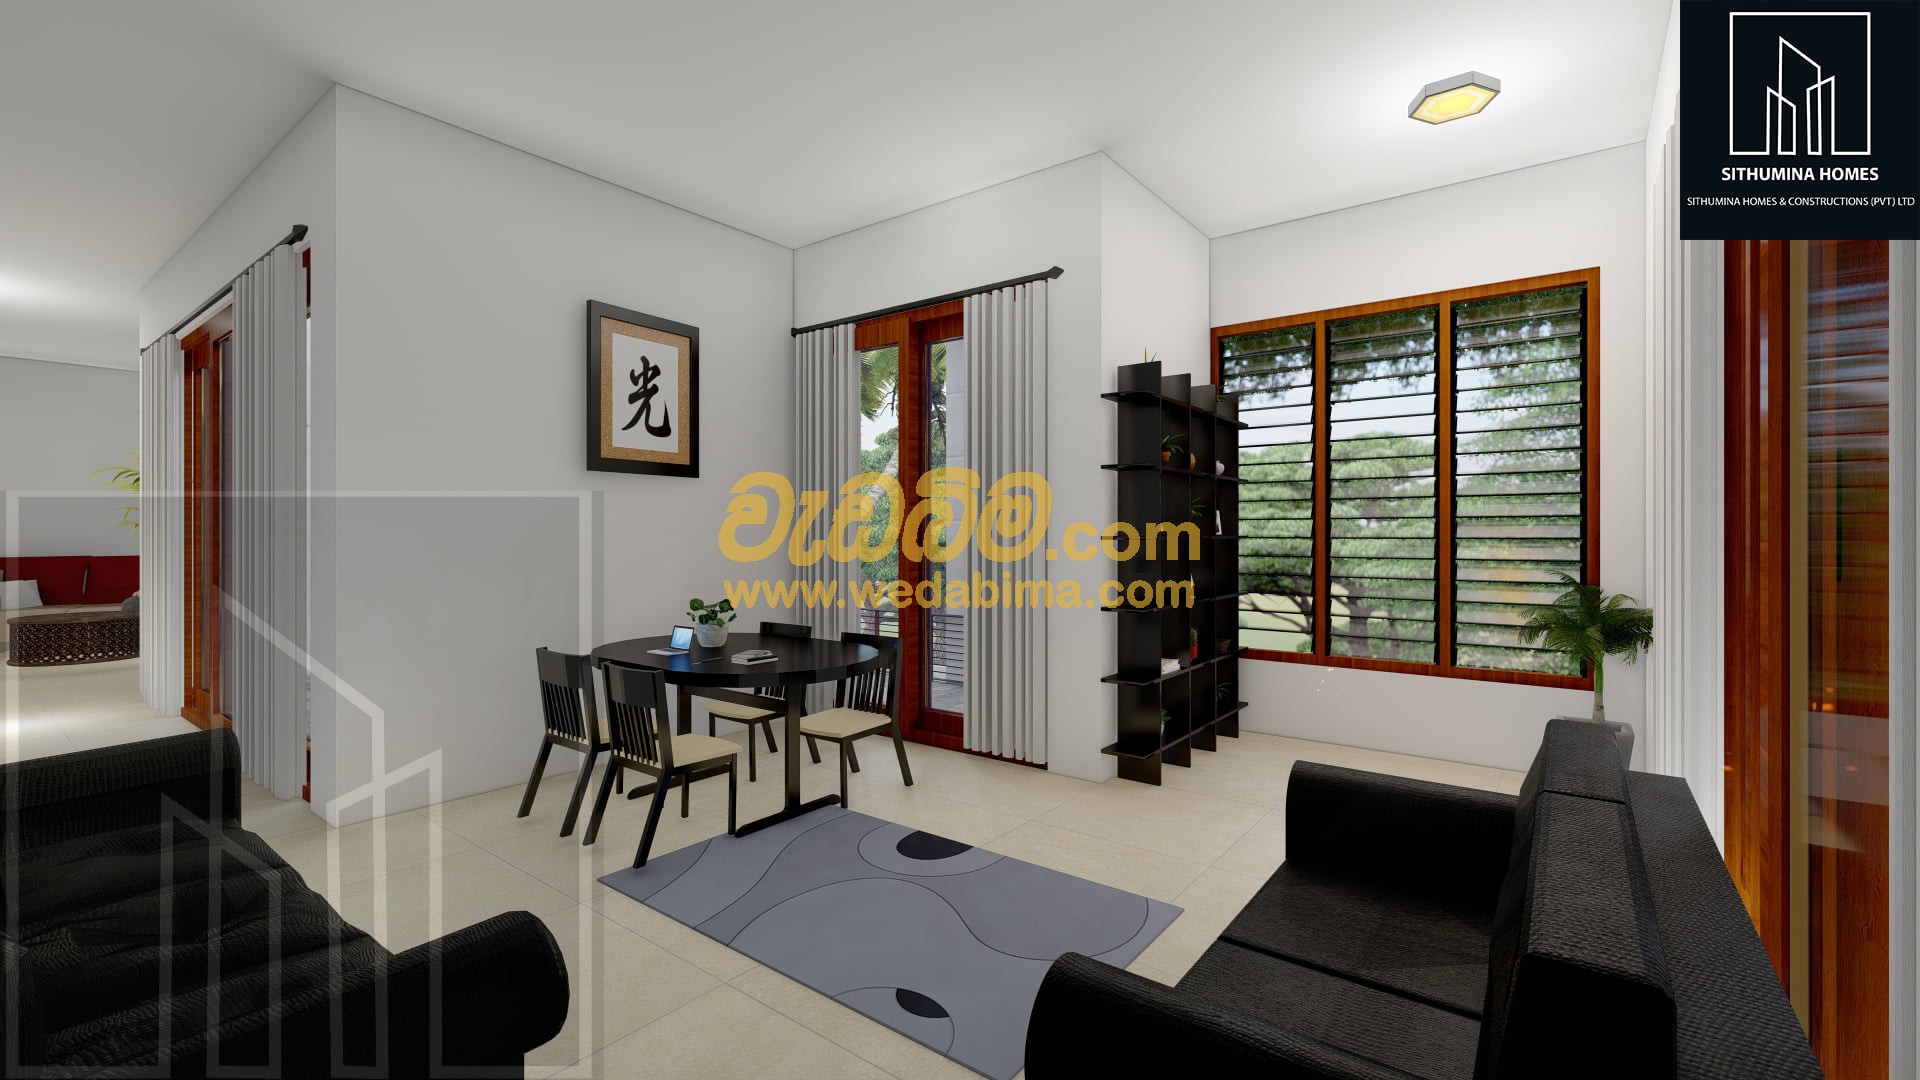 House Interior Design Services in Sri Lanka